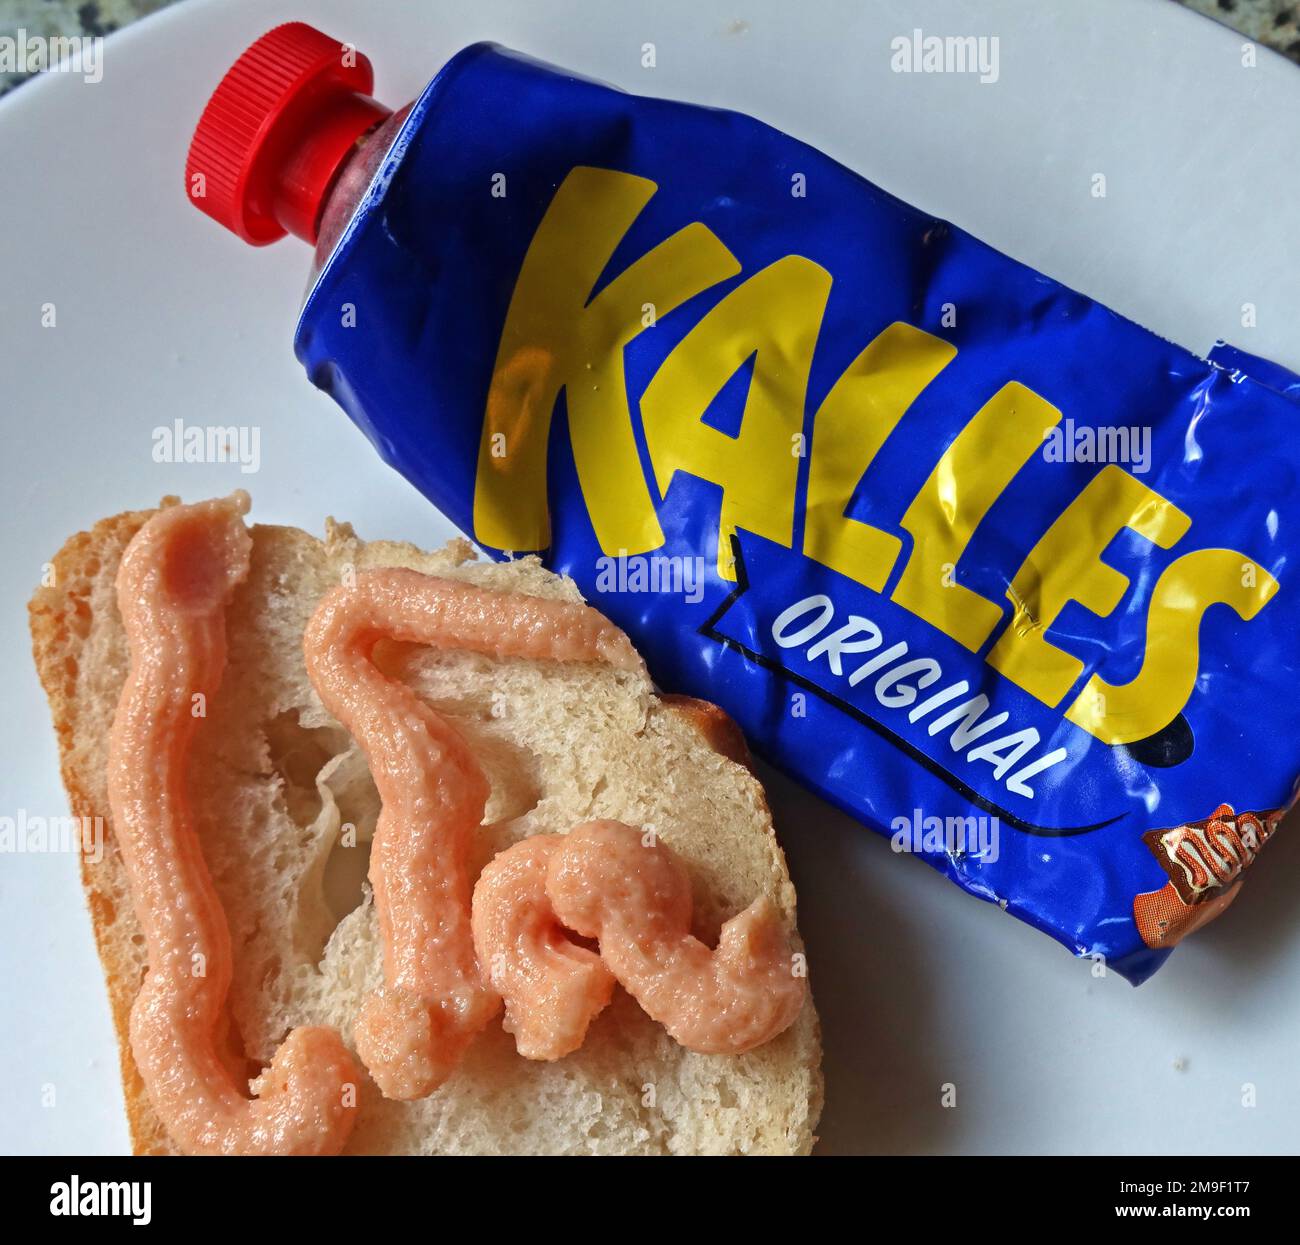 Blaue Tube Kalles Original, gesalzener Kabeljaurogen (gadus morhua), Zucker, Canolaöl und Gewürze, auf frisches Brot gespritzt, schwedisches IKEA-Essen Stockfoto